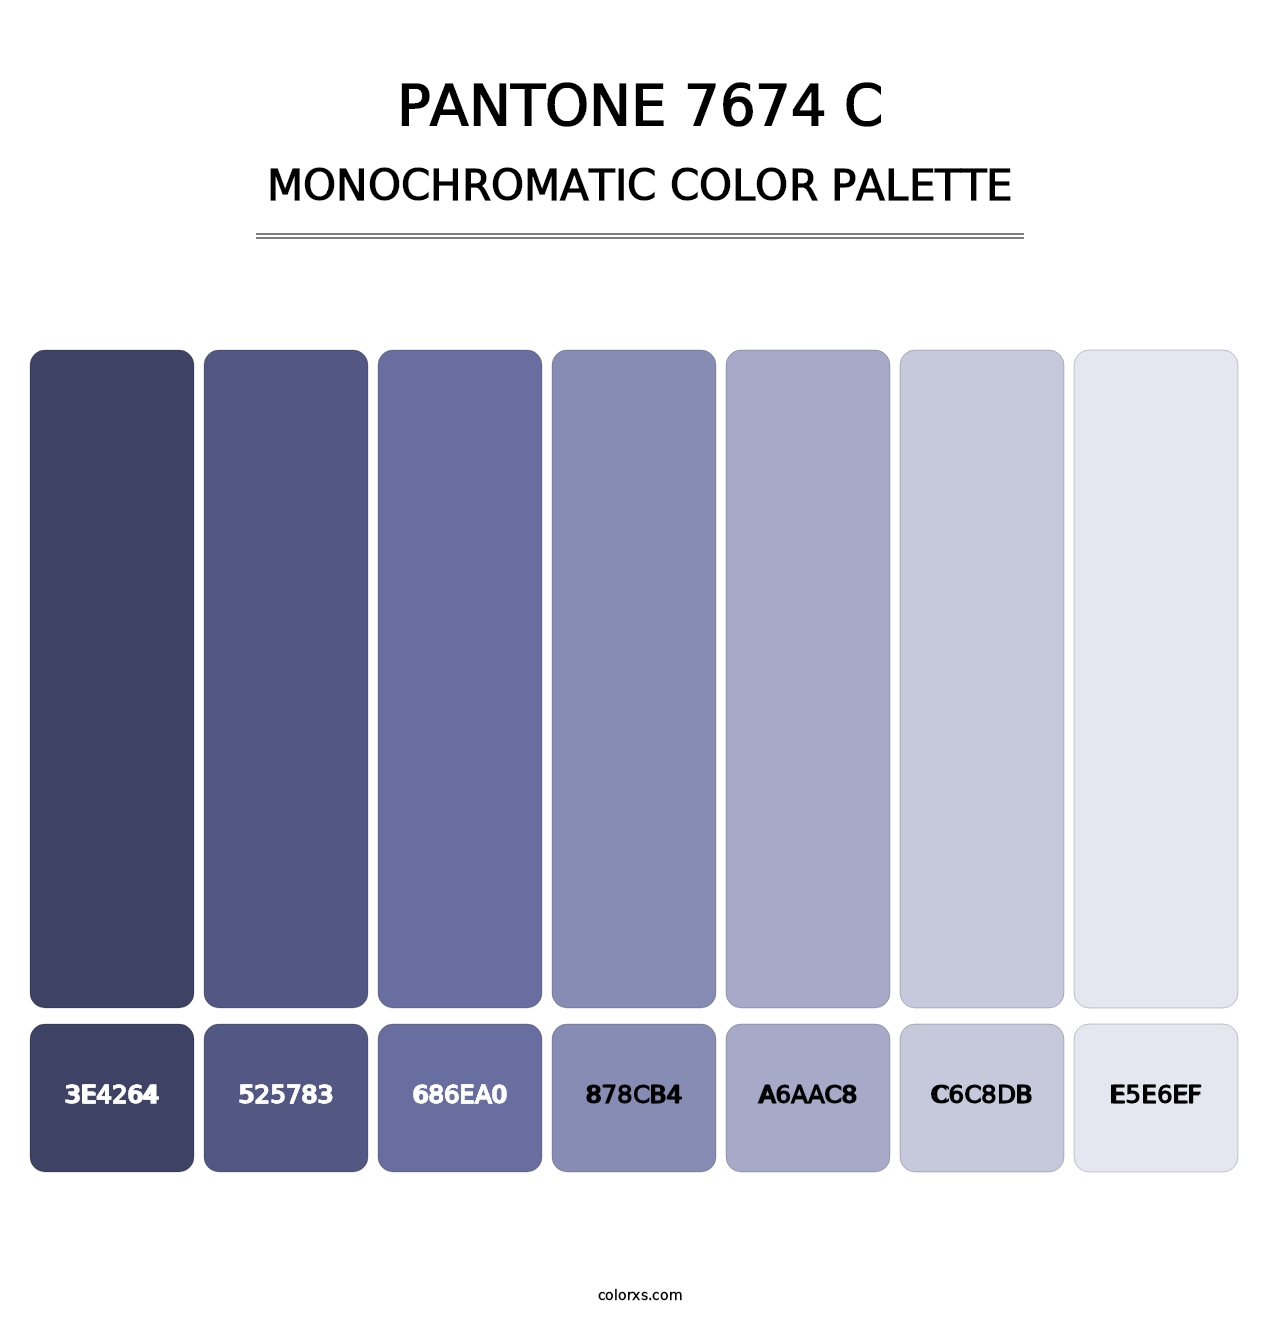 PANTONE 7674 C - Monochromatic Color Palette